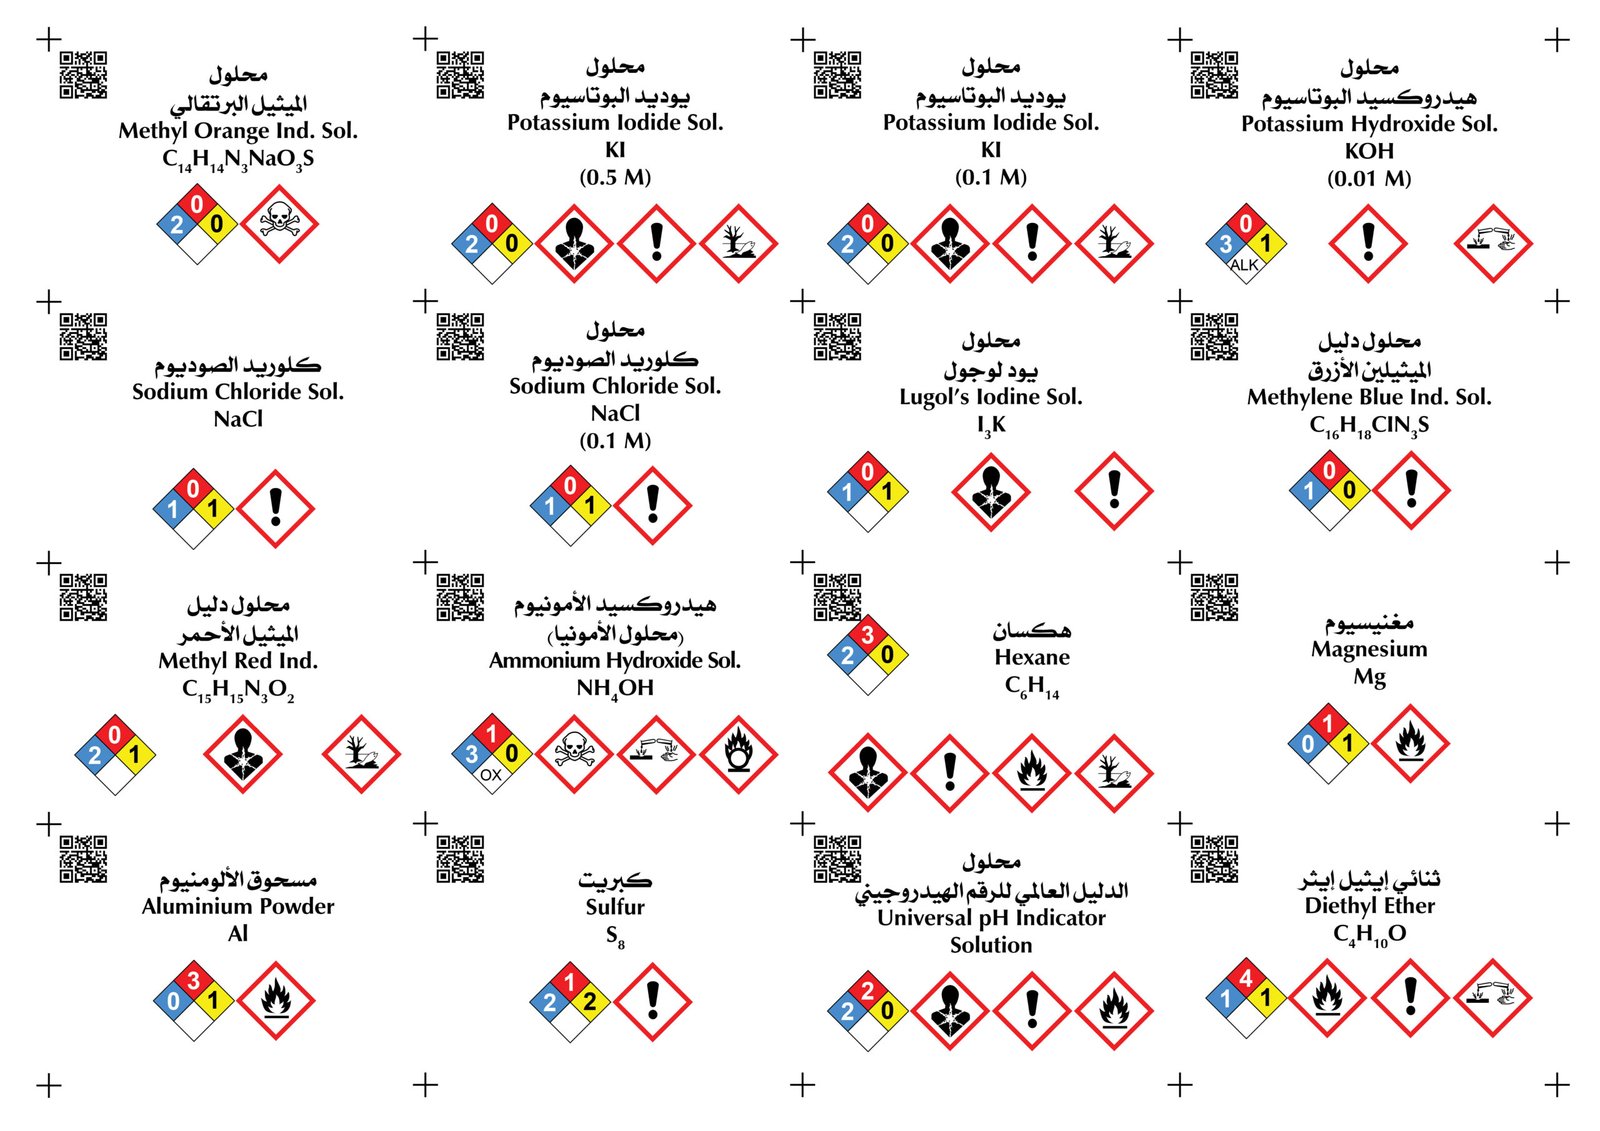 ملصقات المواد الكيميائية5 scaled